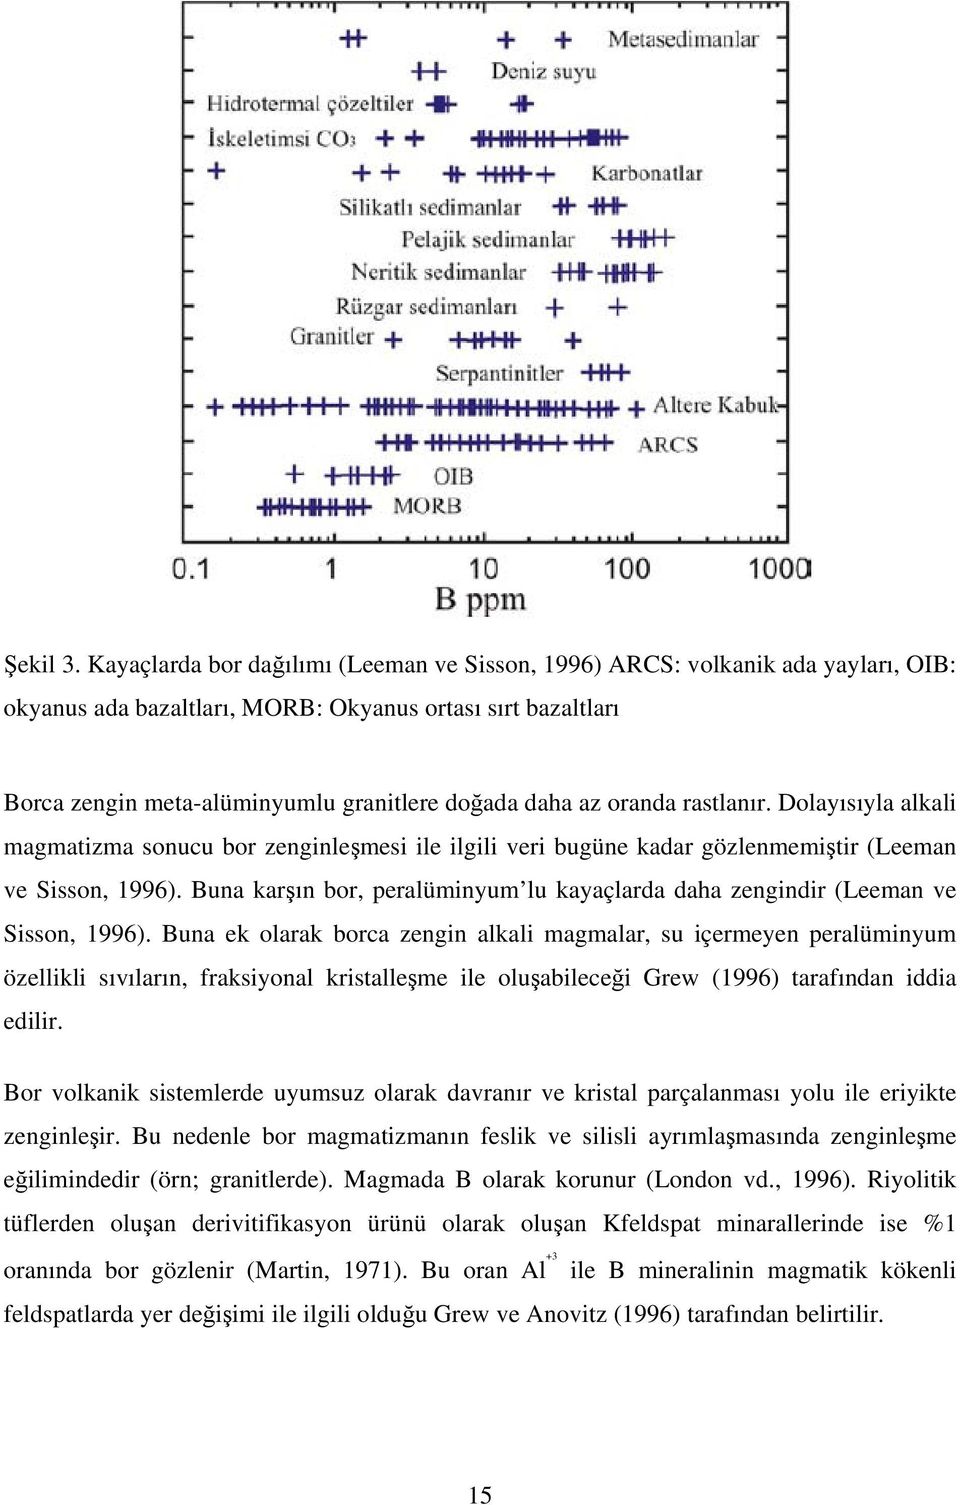 oranda rastlanır. Dolayısıyla alkali magmatizma sonucu bor zenginleşmesi ile ilgili veri bugüne kadar gözlenmemiştir (Leeman ve Sisson, 1996).